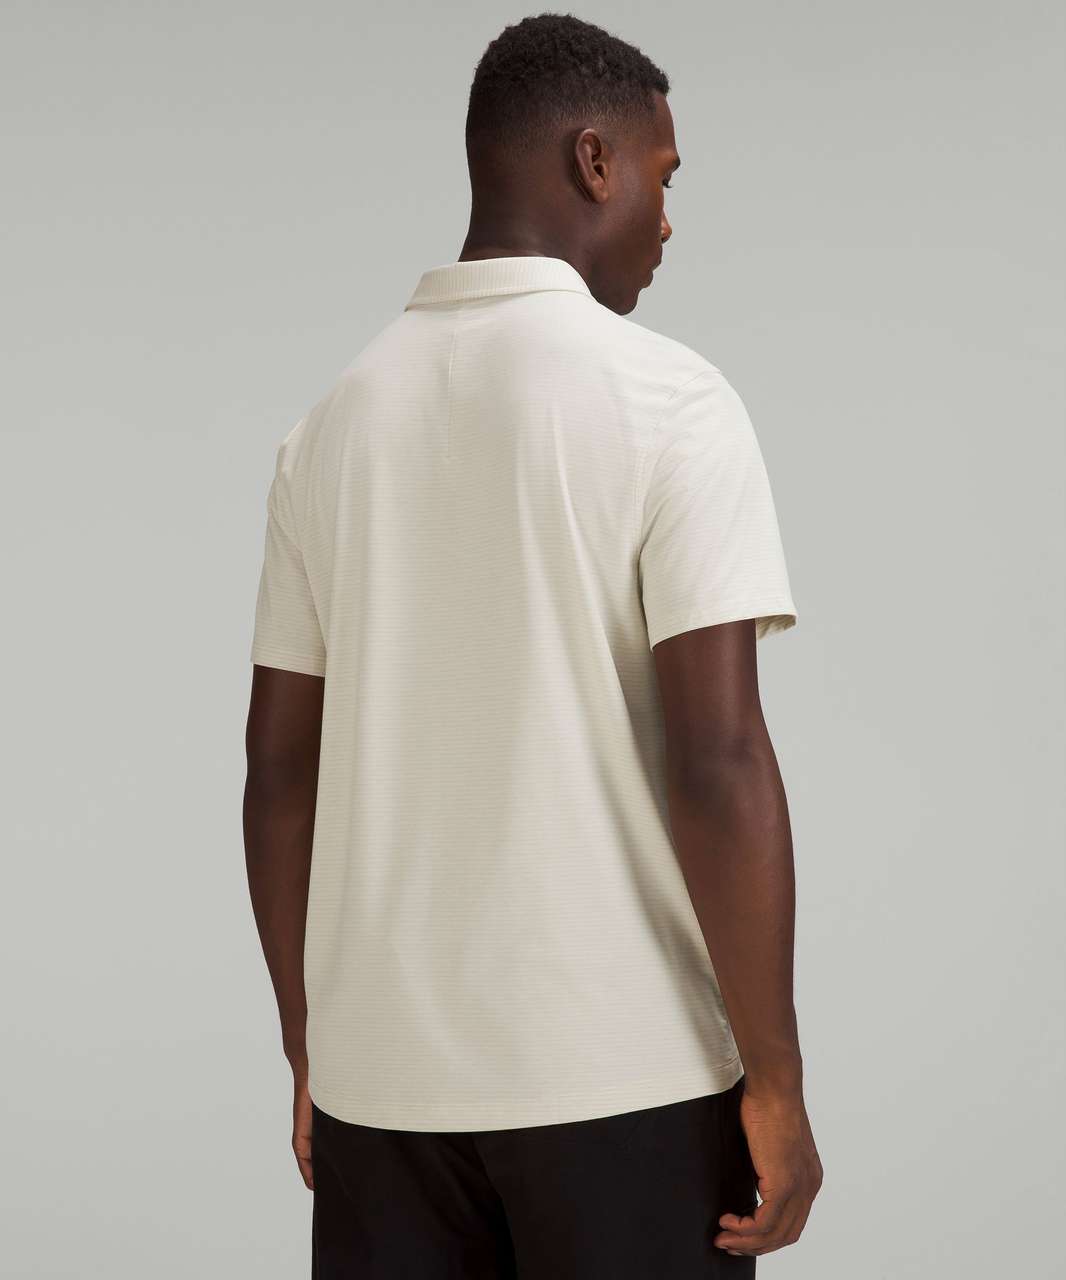 Lululemon Evolution Short Sleeve Polo Shirt - Heathered Natural Ivory ...